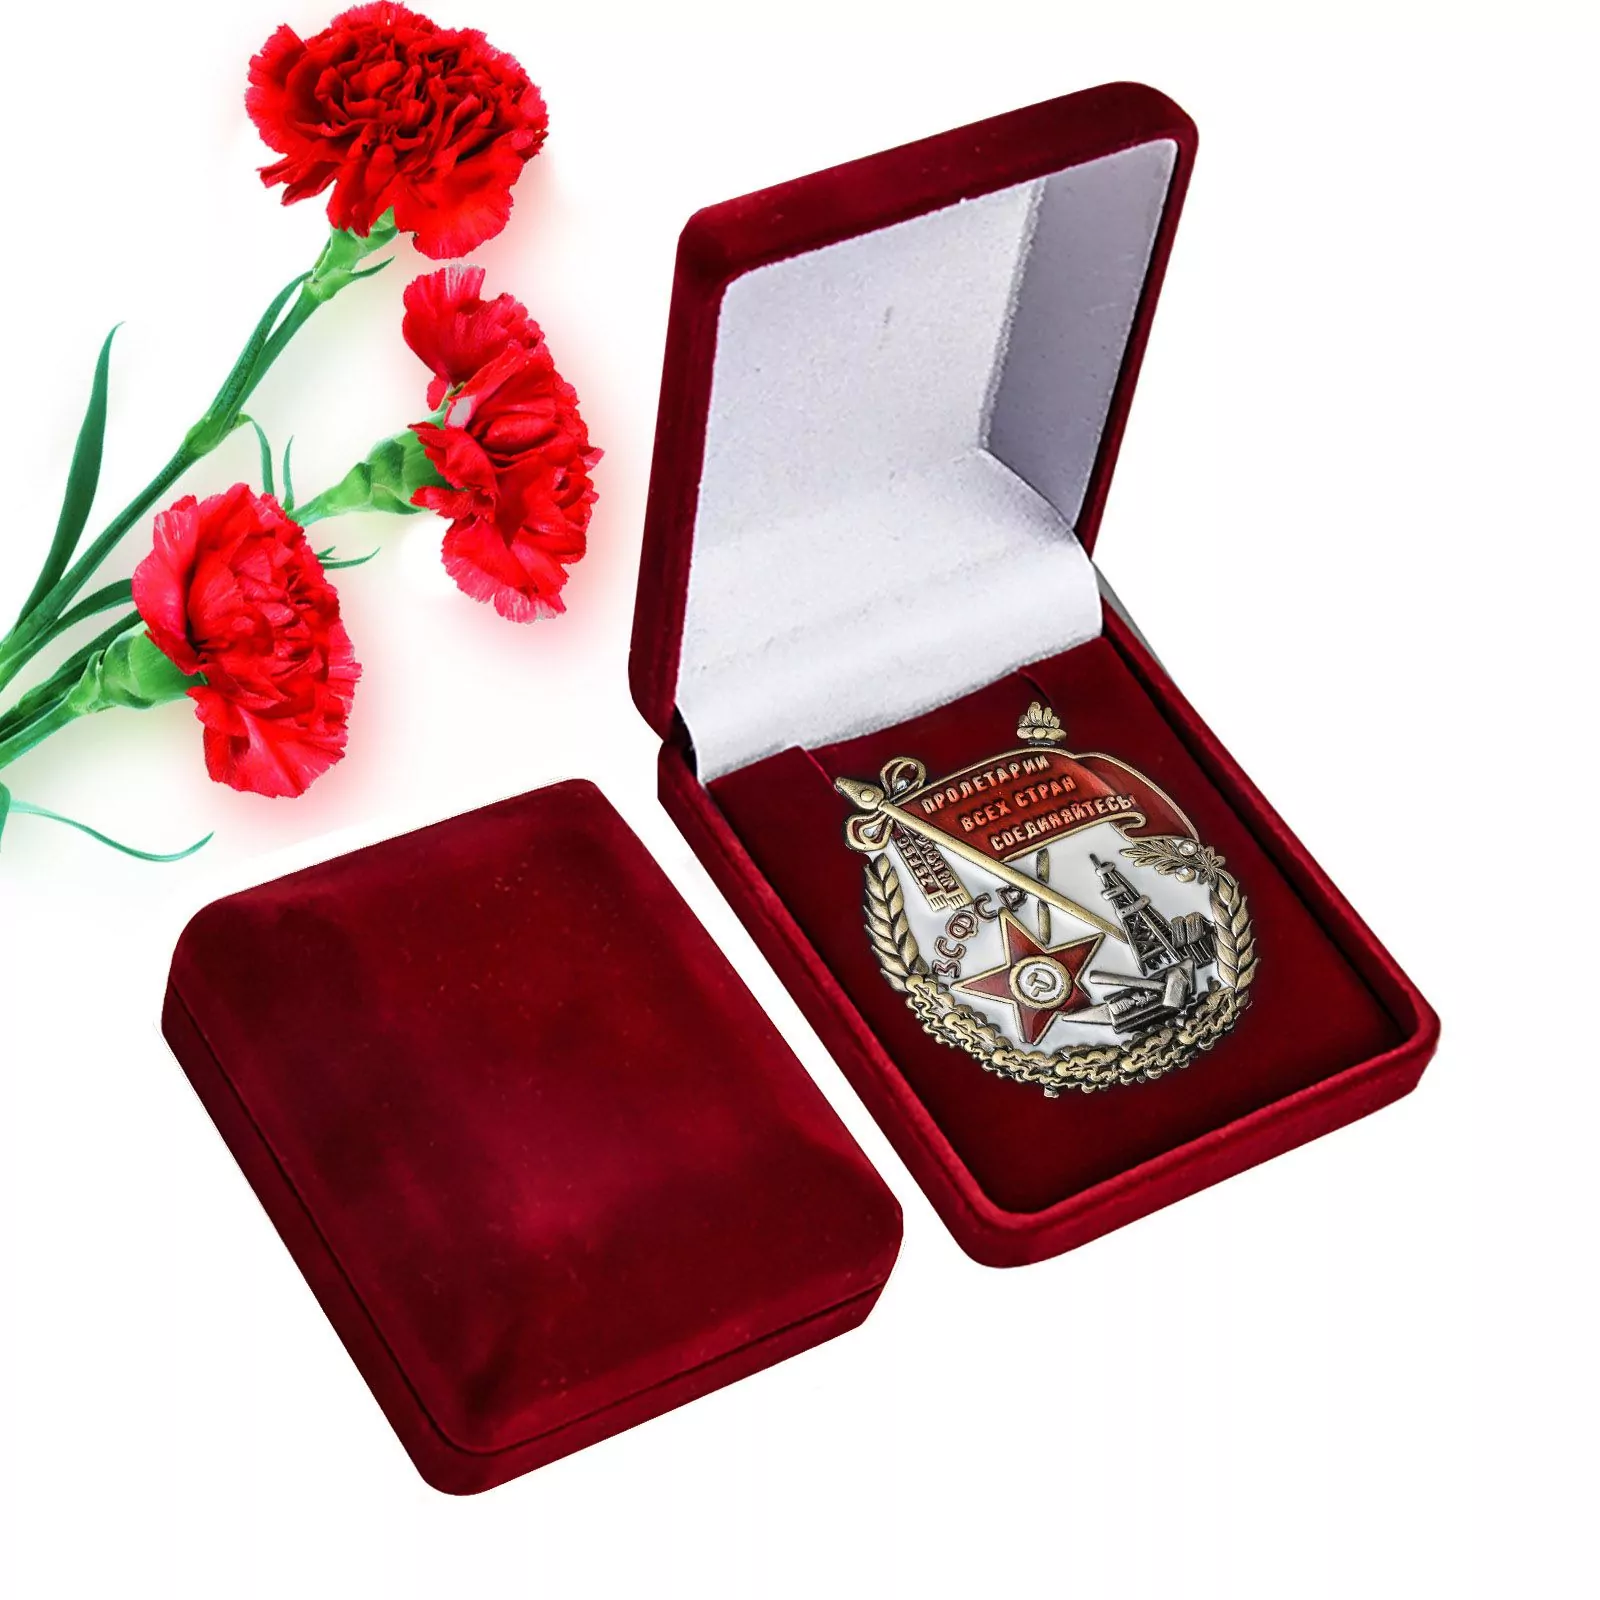 Орден Трудового Красного Знамени ЗСФСР в подарочном футляре №1793